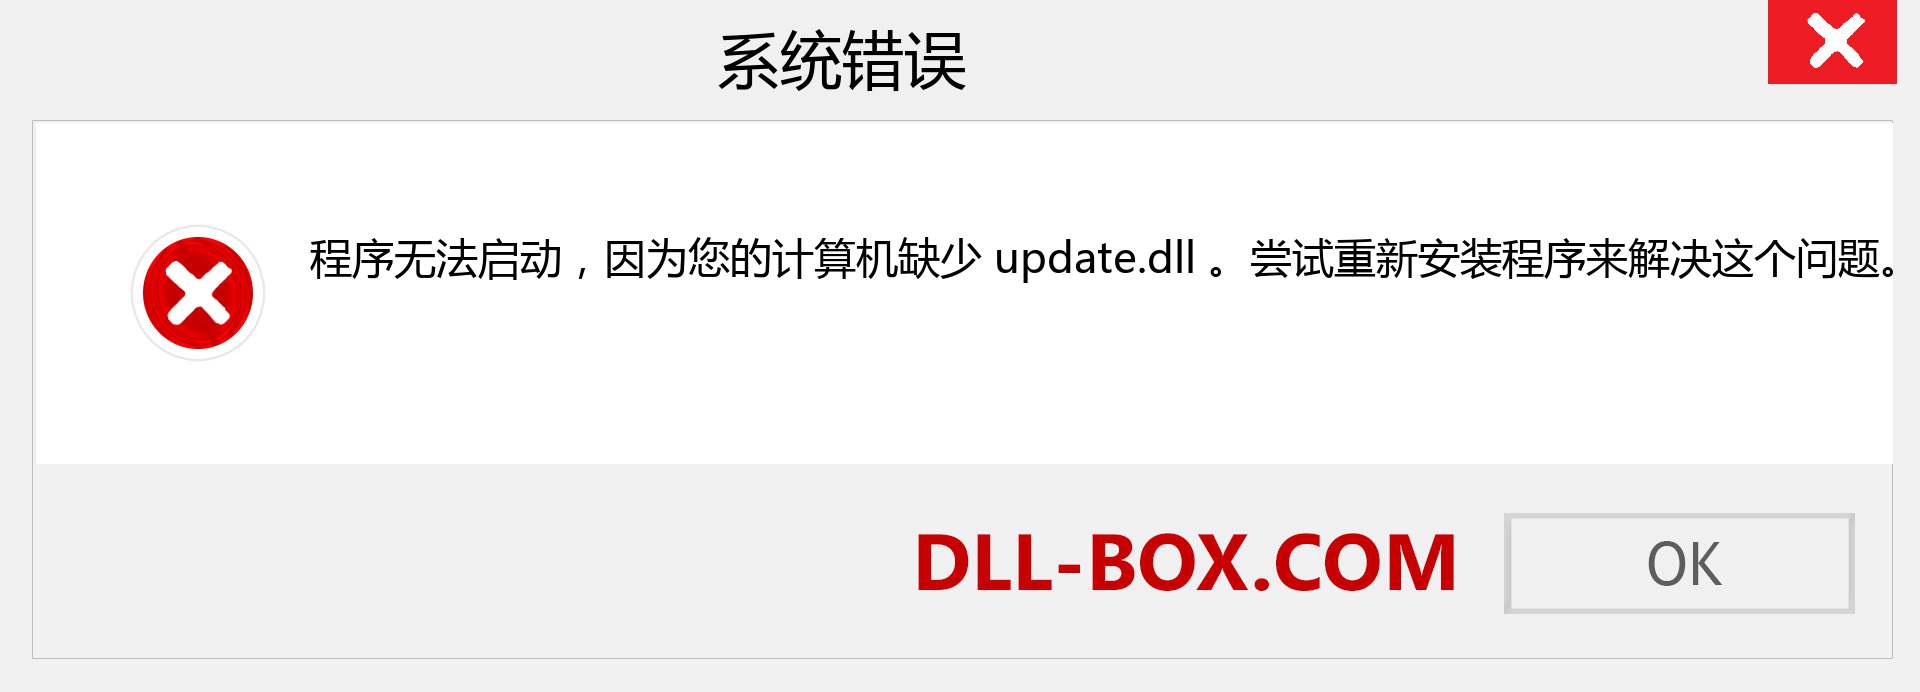 update.dll 文件丢失？。 适用于 Windows 7、8、10 的下载 - 修复 Windows、照片、图像上的 update dll 丢失错误